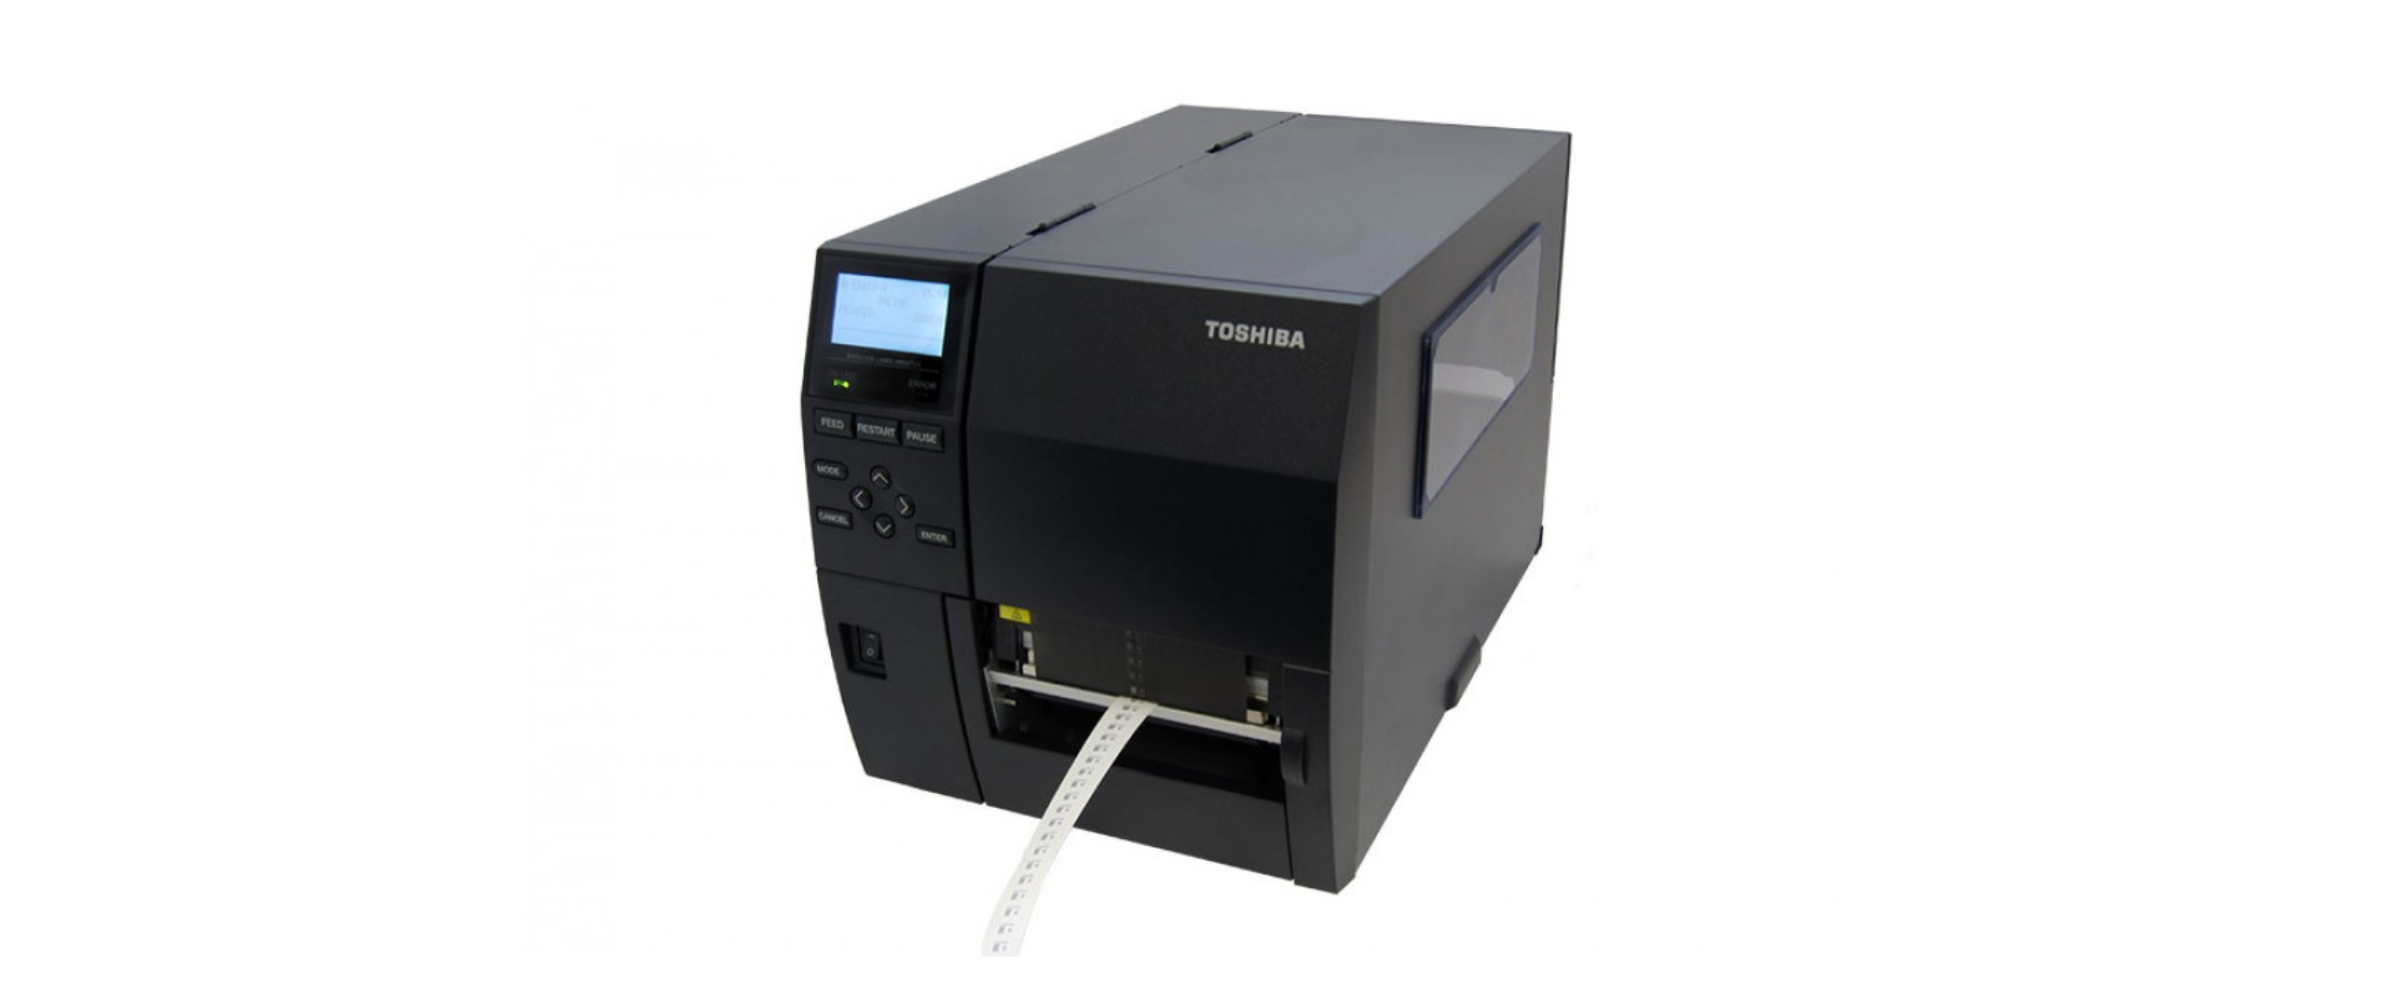 Toshiba's thermal barcode printer